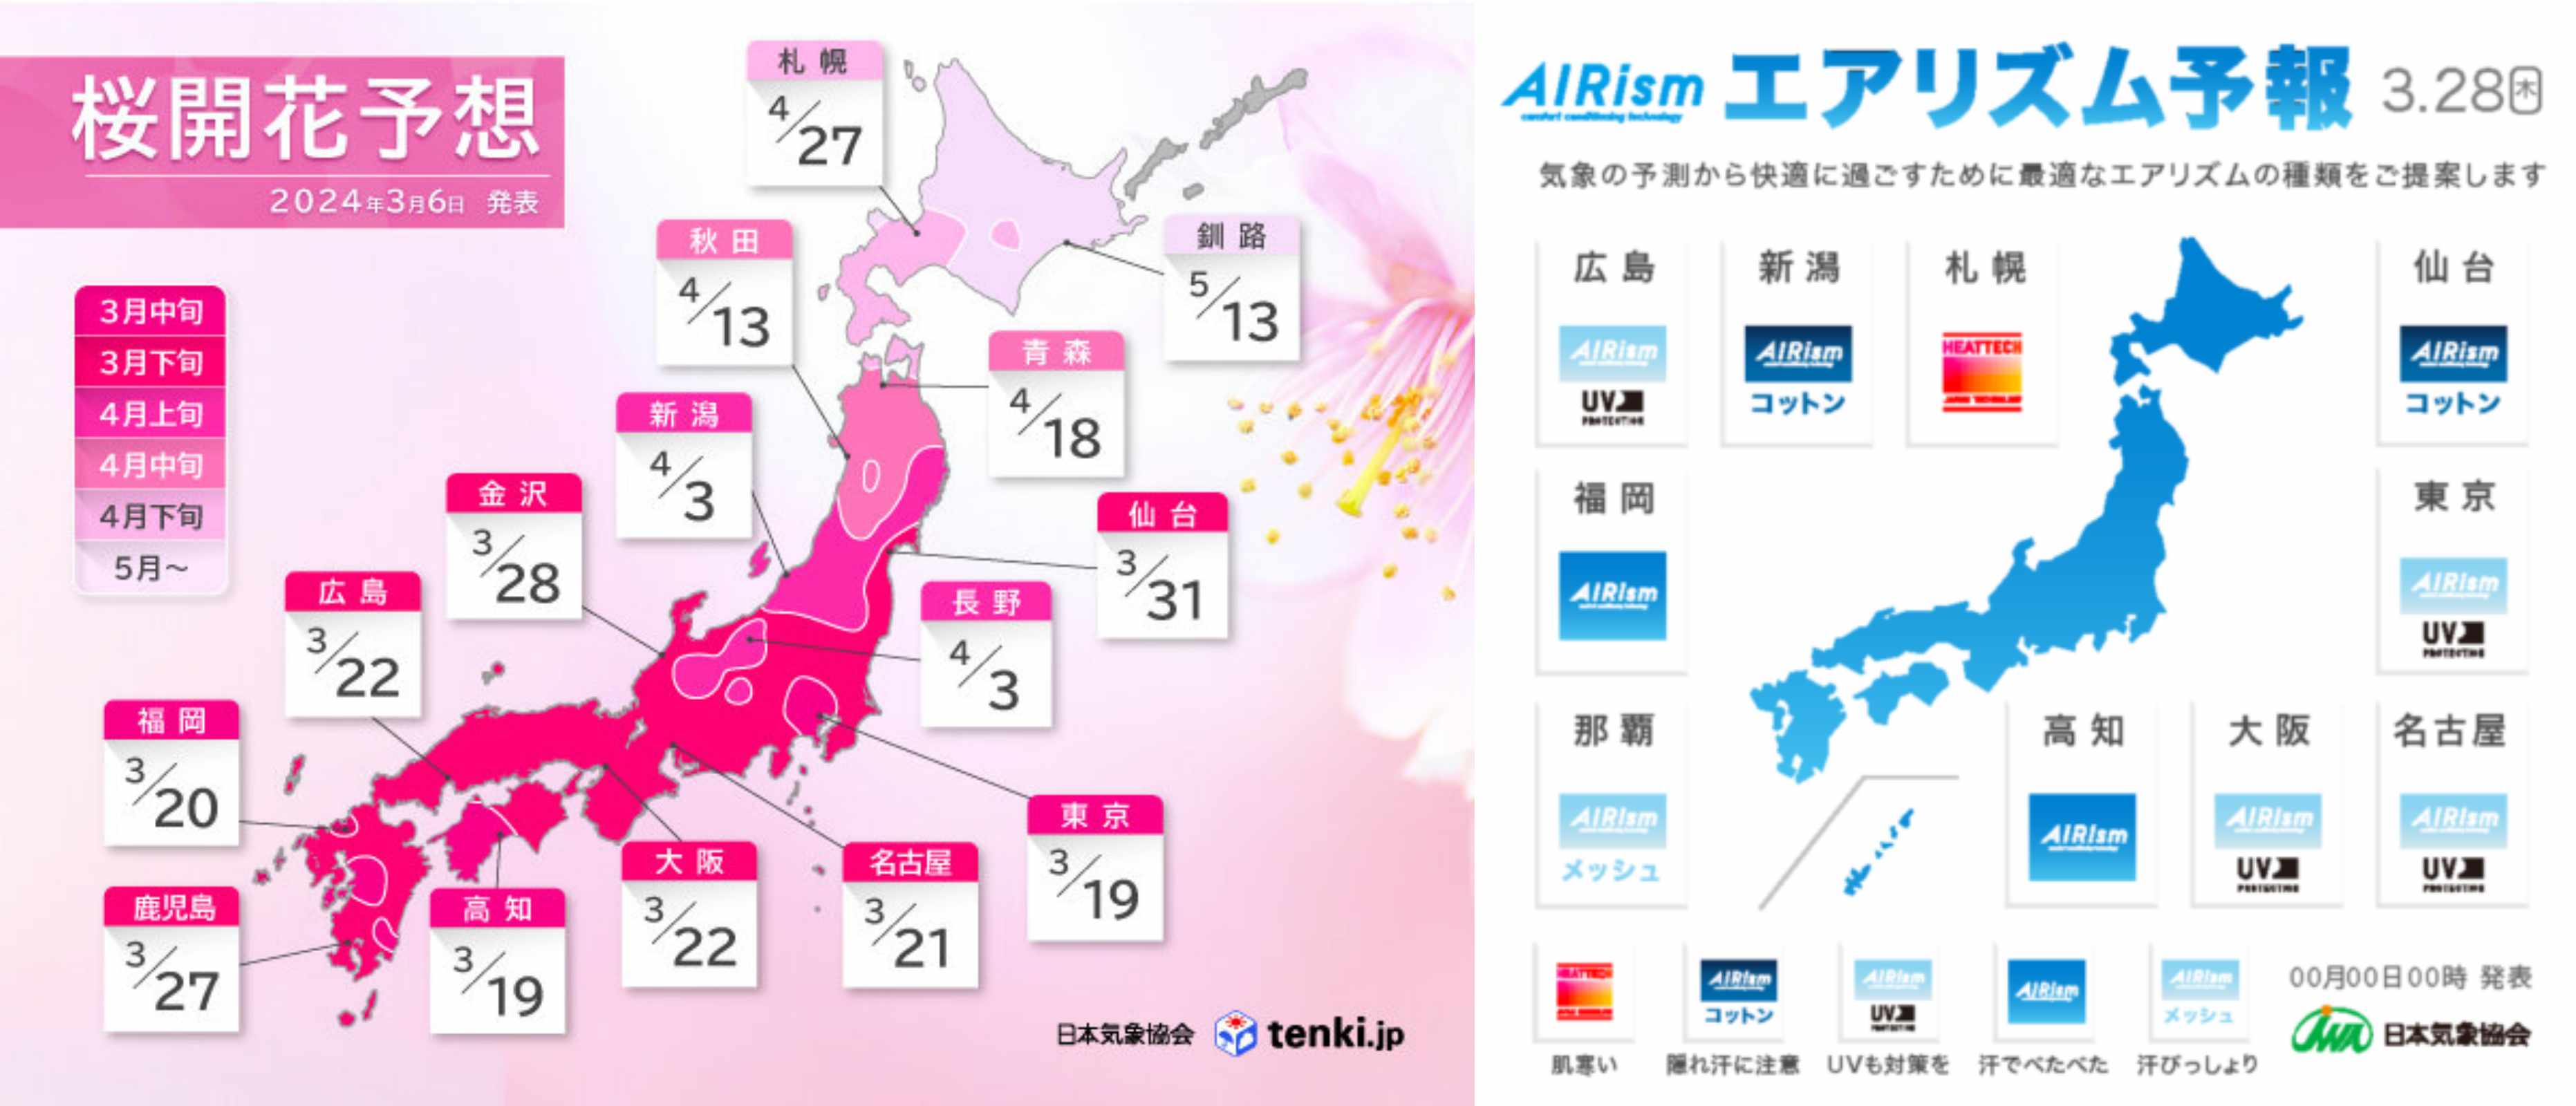 벚꽃이 피는 시기로도 그려지는 지도, 봄날의 시그널인가요. 다만, 지금 도쿄는 갑작스레 찾아온 급추위에 아마 저 숫자는 조금씩 다 뒤로 밀릴 것 같아요(左), 그리고 유니클로는 에어리즘 내복 잆는 시기로 열도 지도를 썼어요.